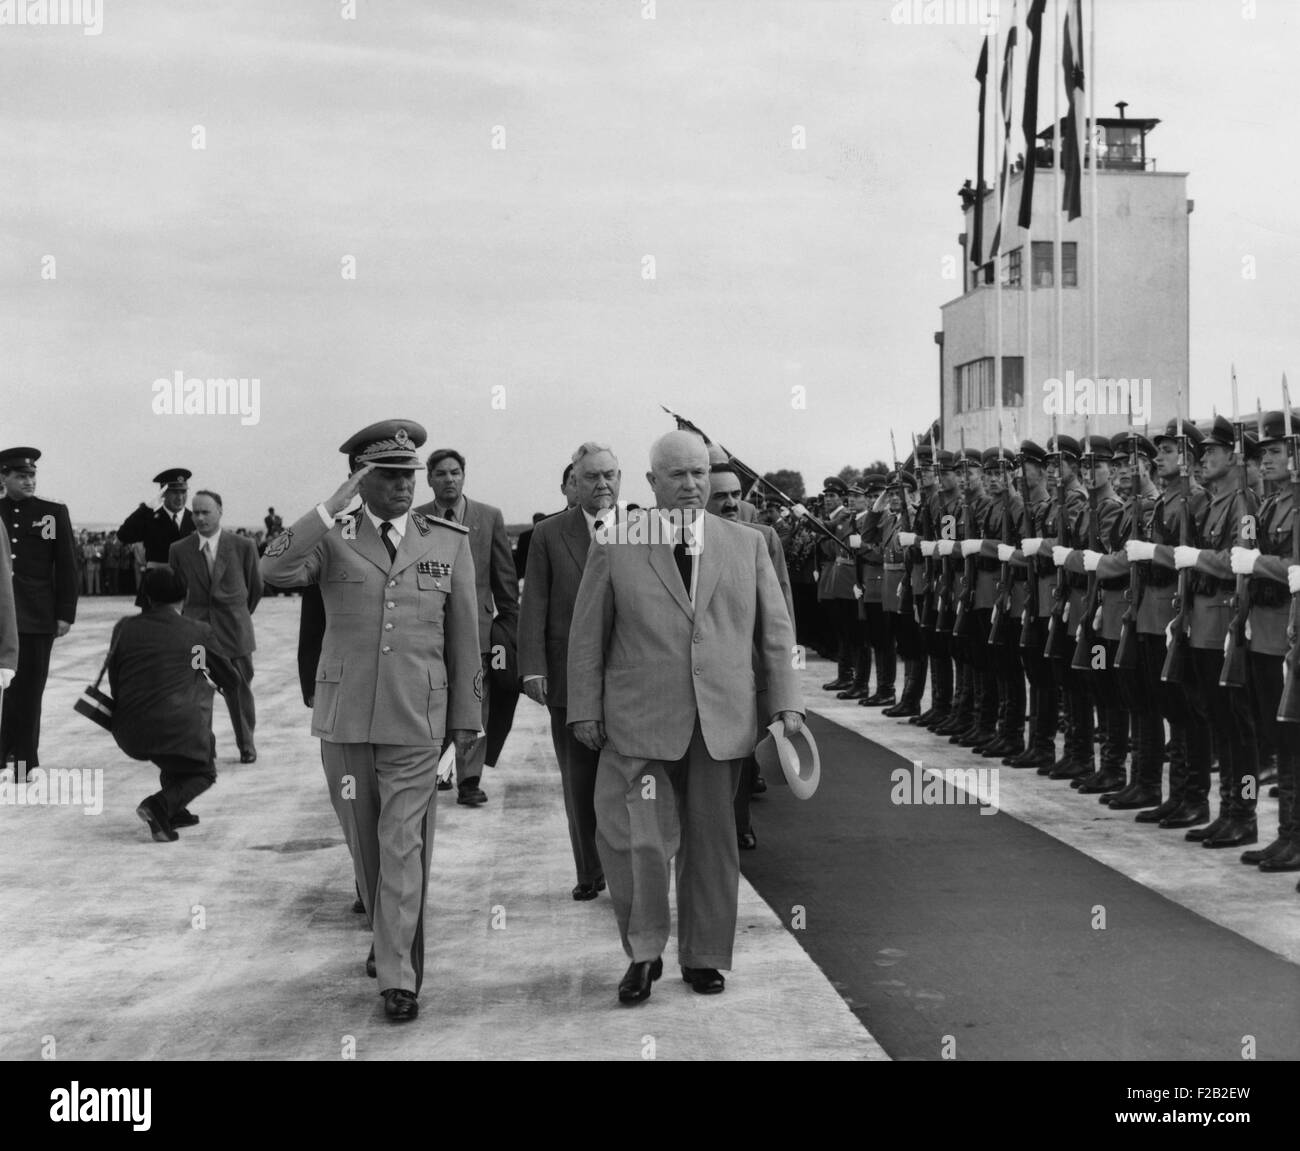 Nikita Khrouchtchev promenades avec Josip Tito, leader communiste yougoslave à Belgrade, juin 1955. Marchant derrière est Nikolaï Boulganine, indiquant une position plus élevée de Khrouchtchev en direction soviétique après la mort de Joseph Staline en mars 1953 (  2015 CSU 8 541) Banque D'Images